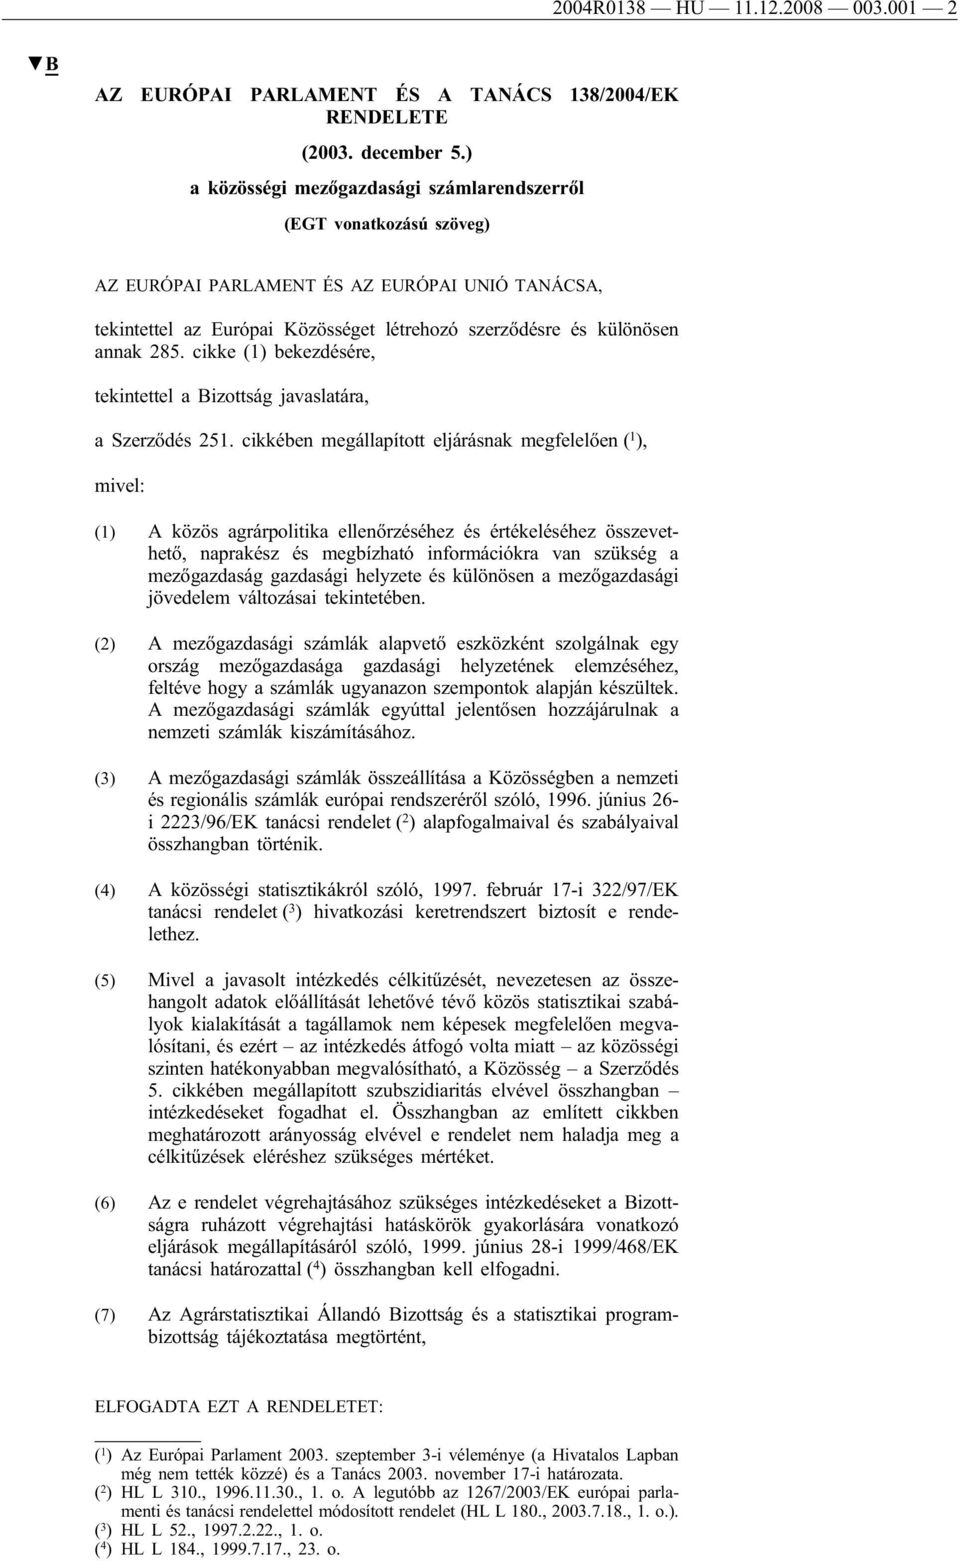 cikke (1) bekezdésére, tekintettel a Bizottság javaslatára, a Szerződés 251.